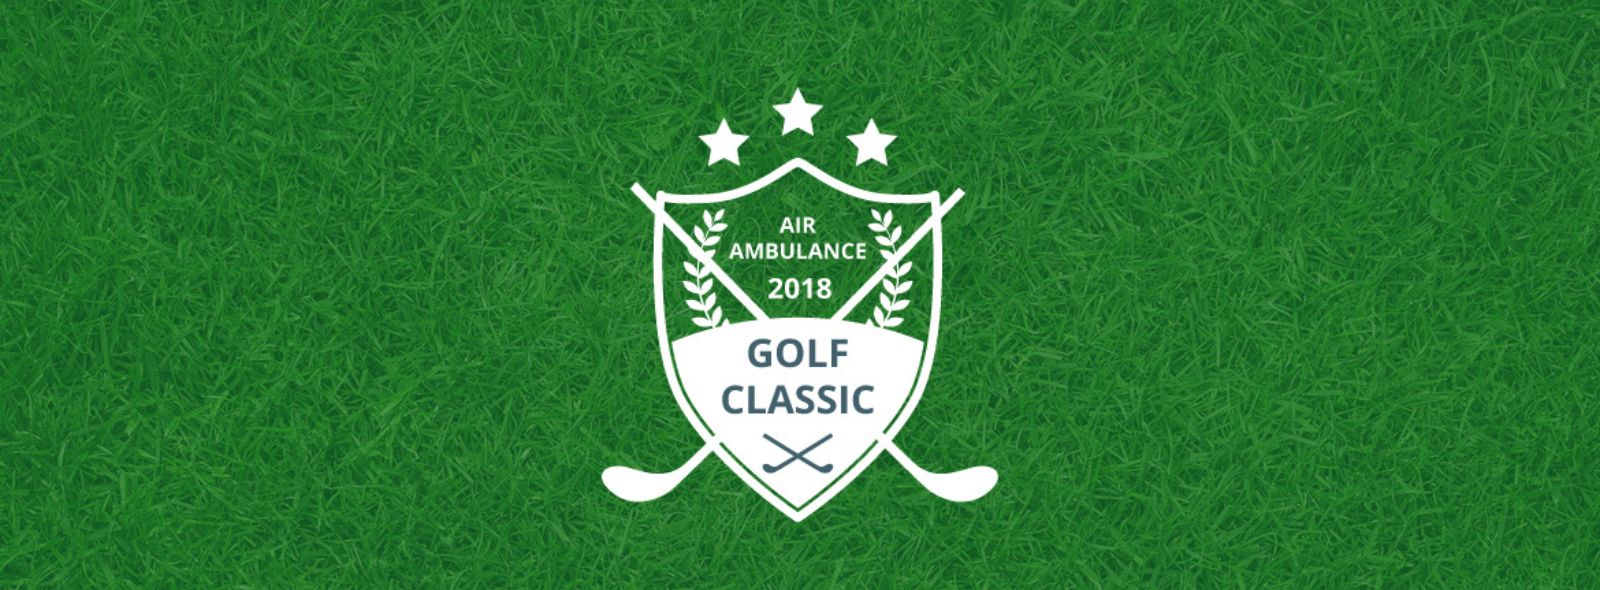 Ornge Golf Classic